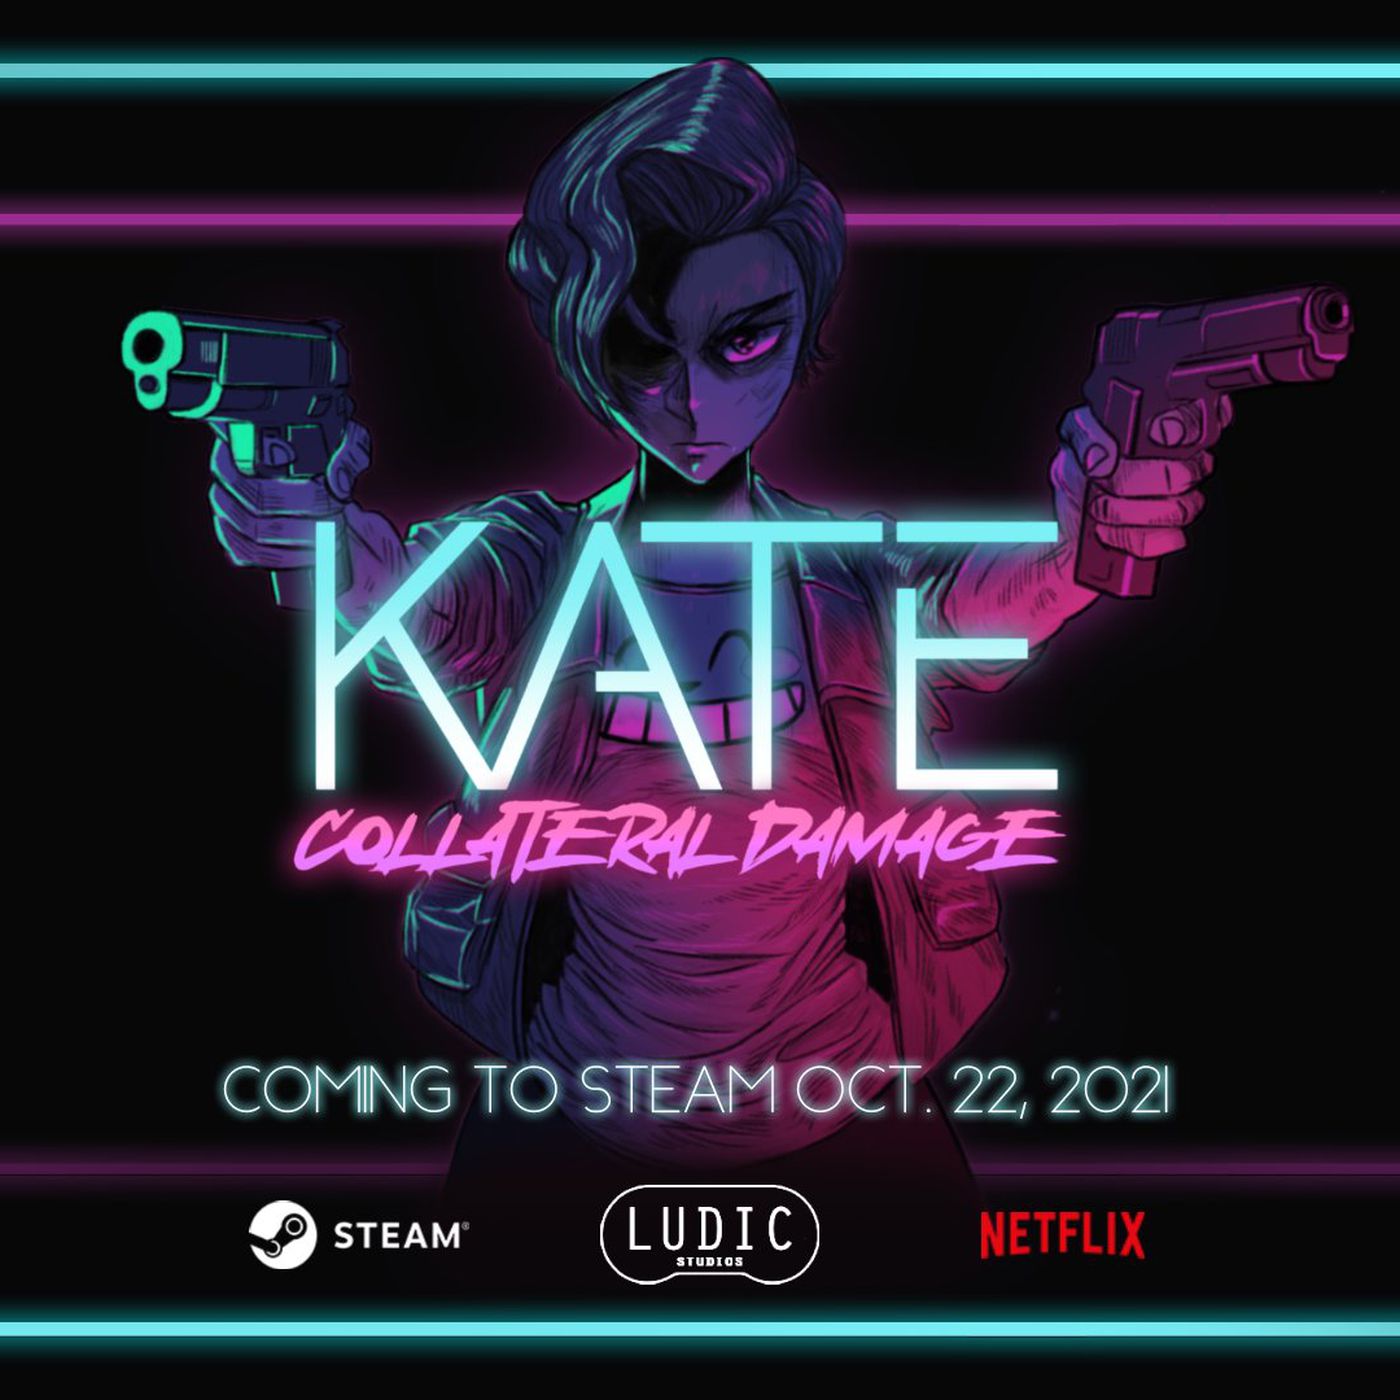 بازی Kate: Collateral Damage